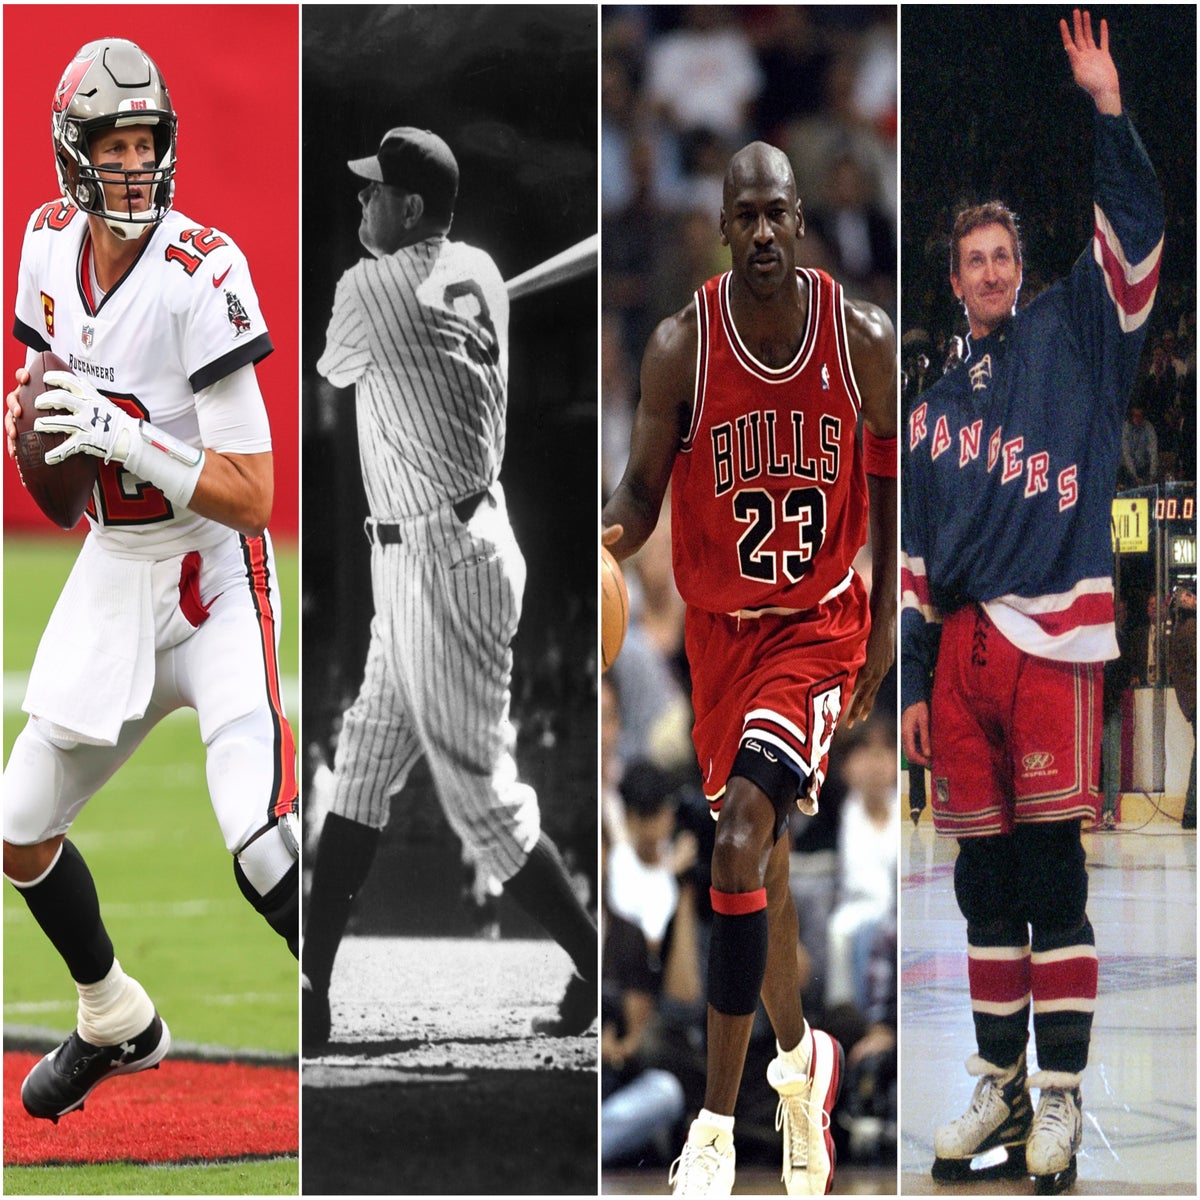 Michael Jordan's Baseball Career and Legacy